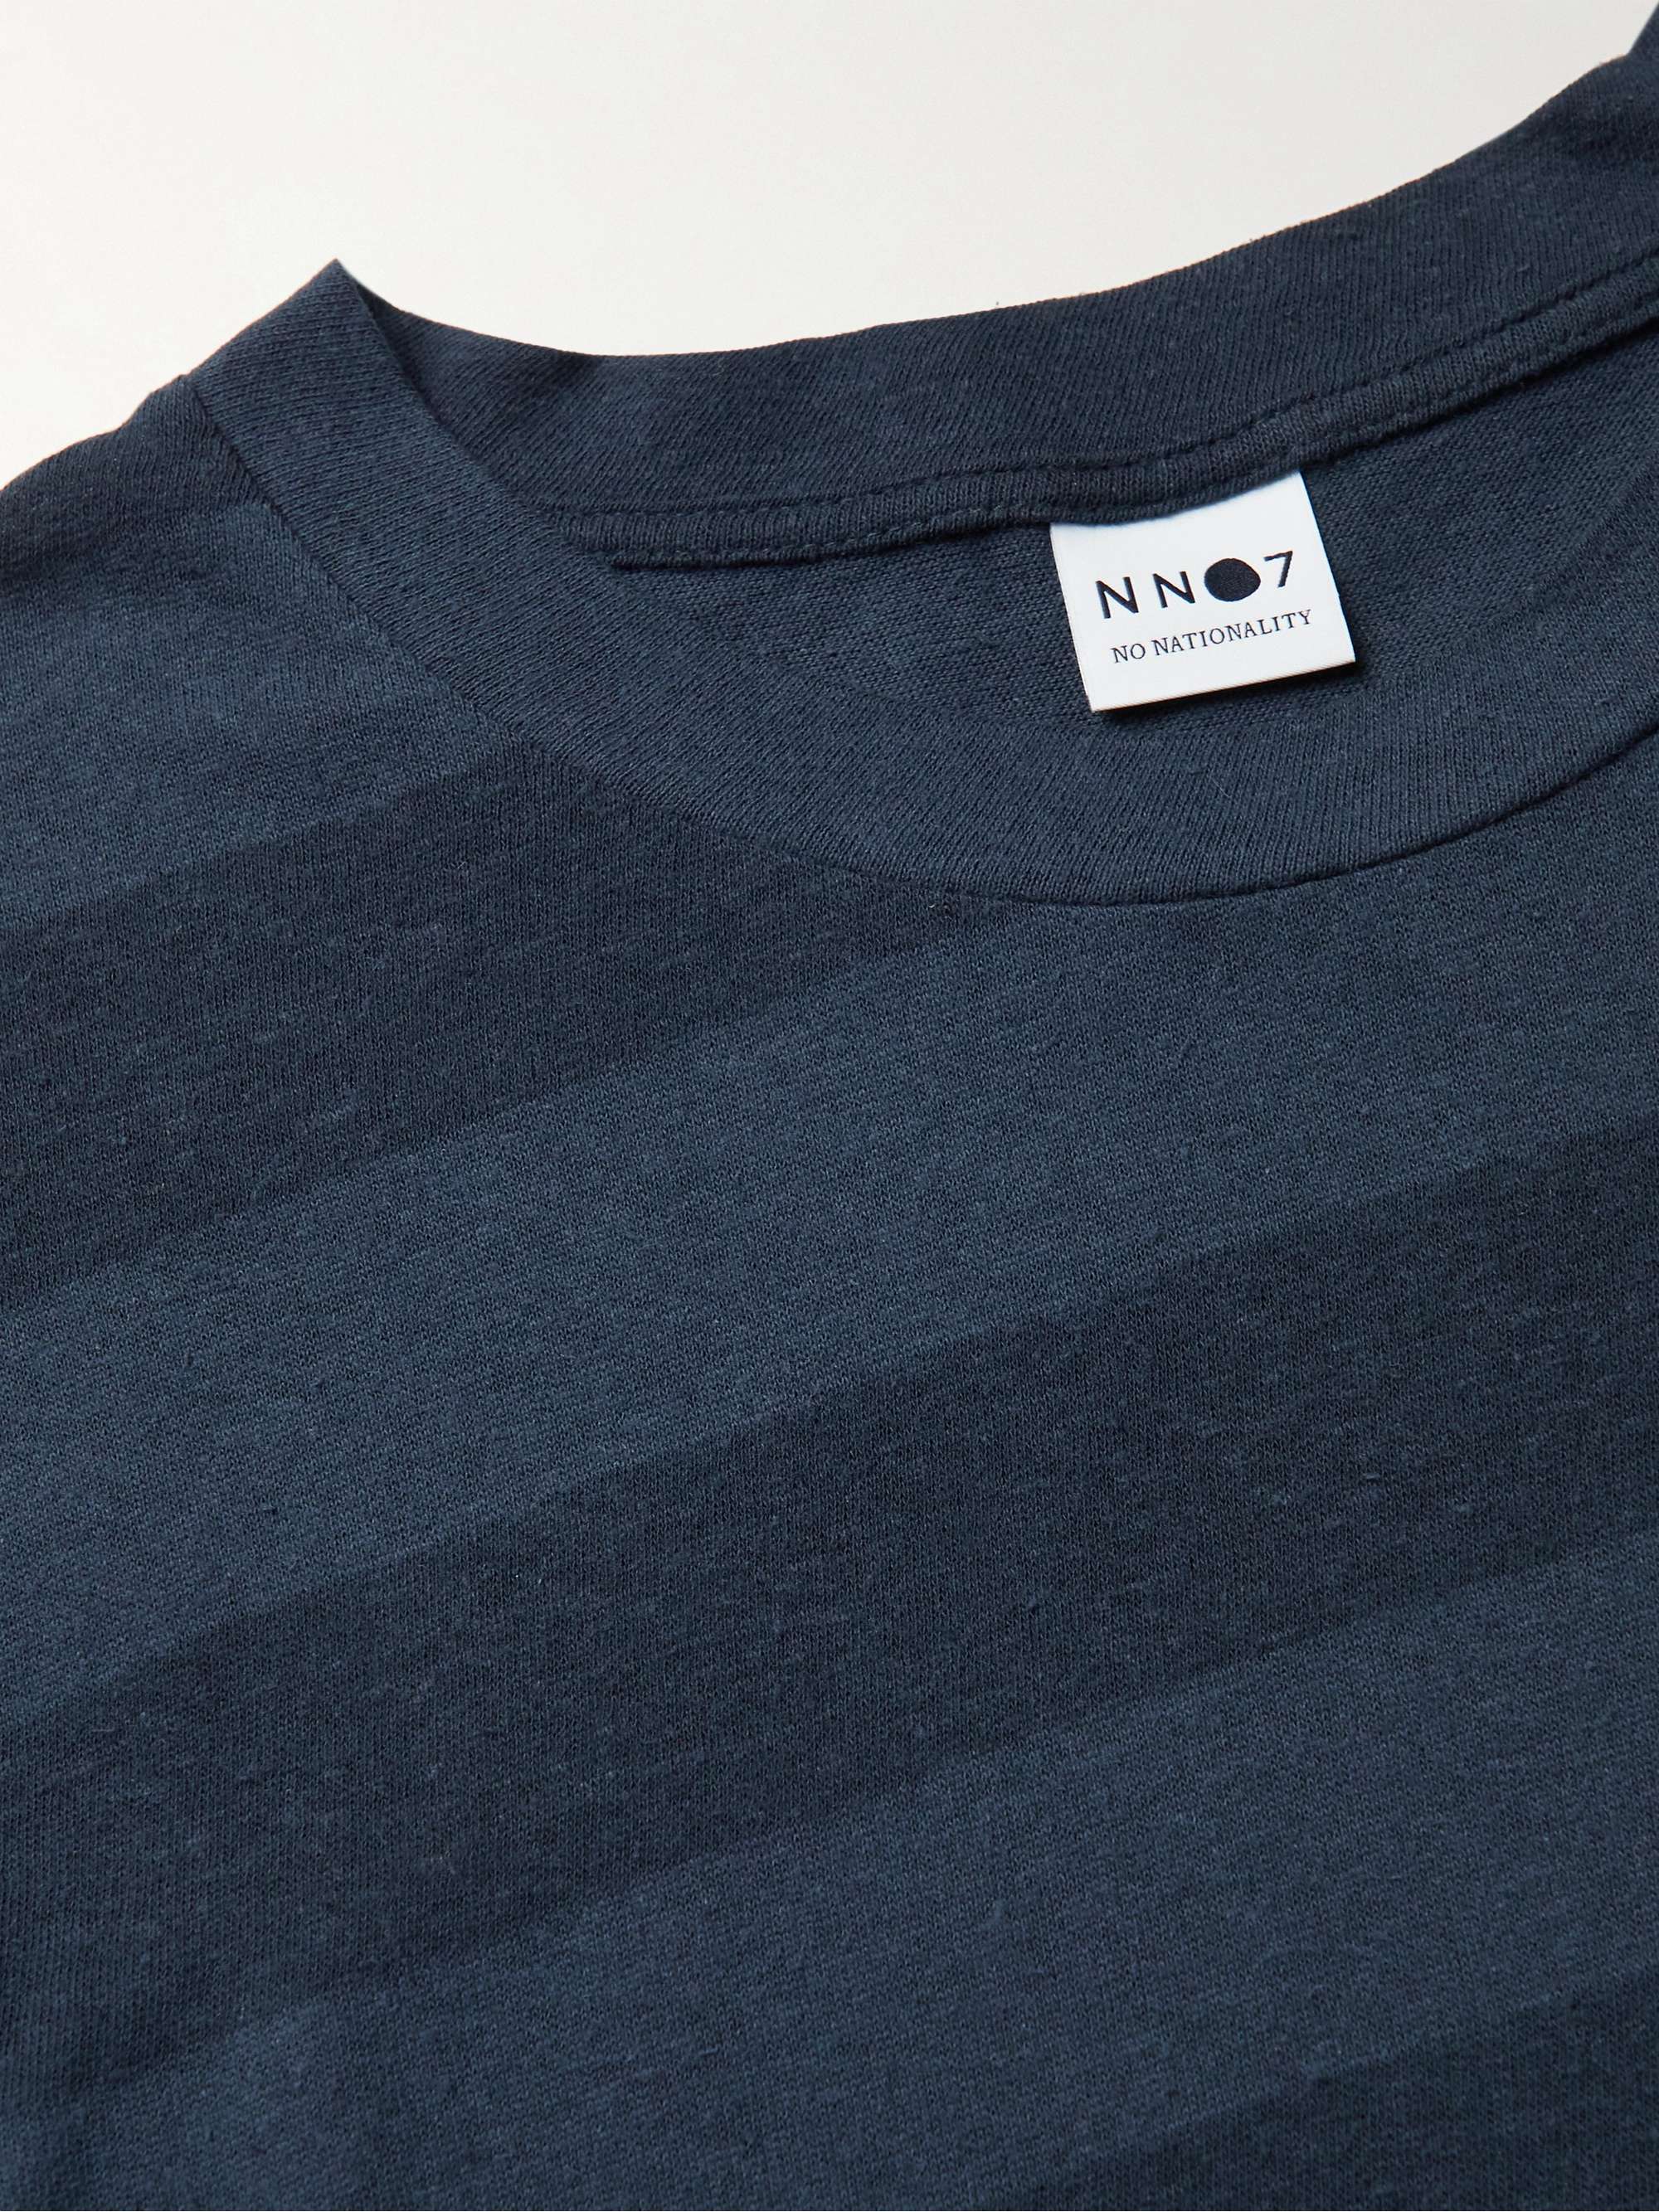 NN07 Arnold Striped Cotton and Linen-Blend Jersey T-Shirt